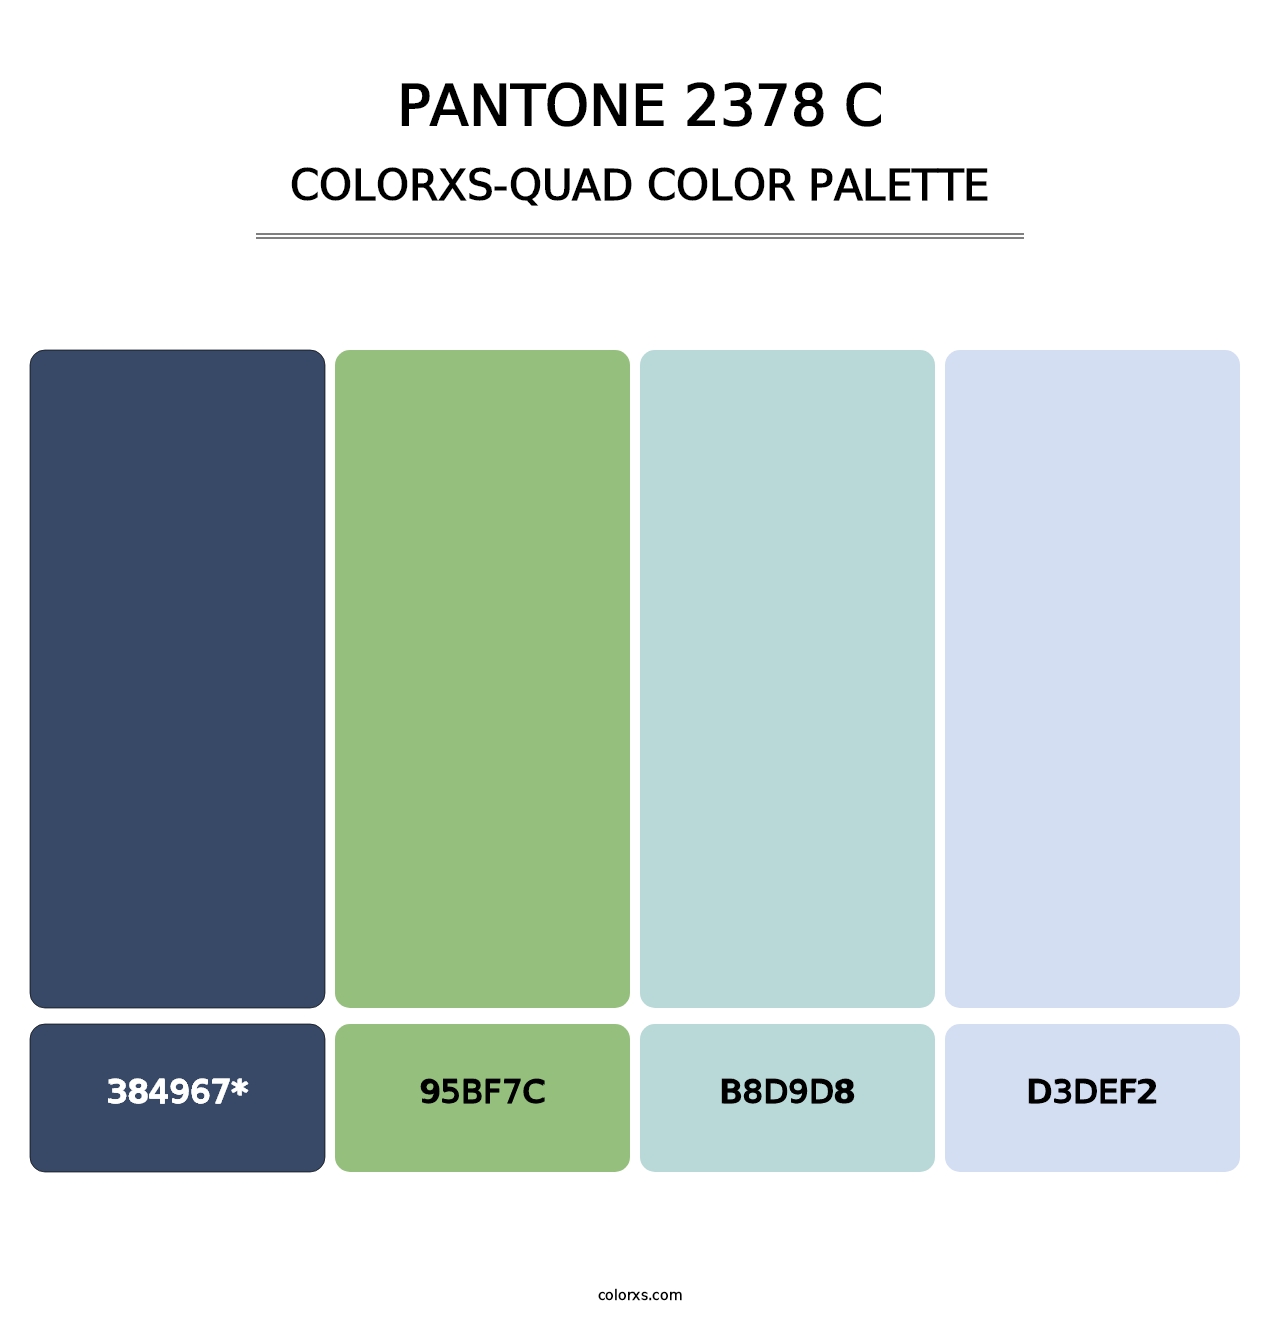 PANTONE 2378 C - Colorxs Quad Palette